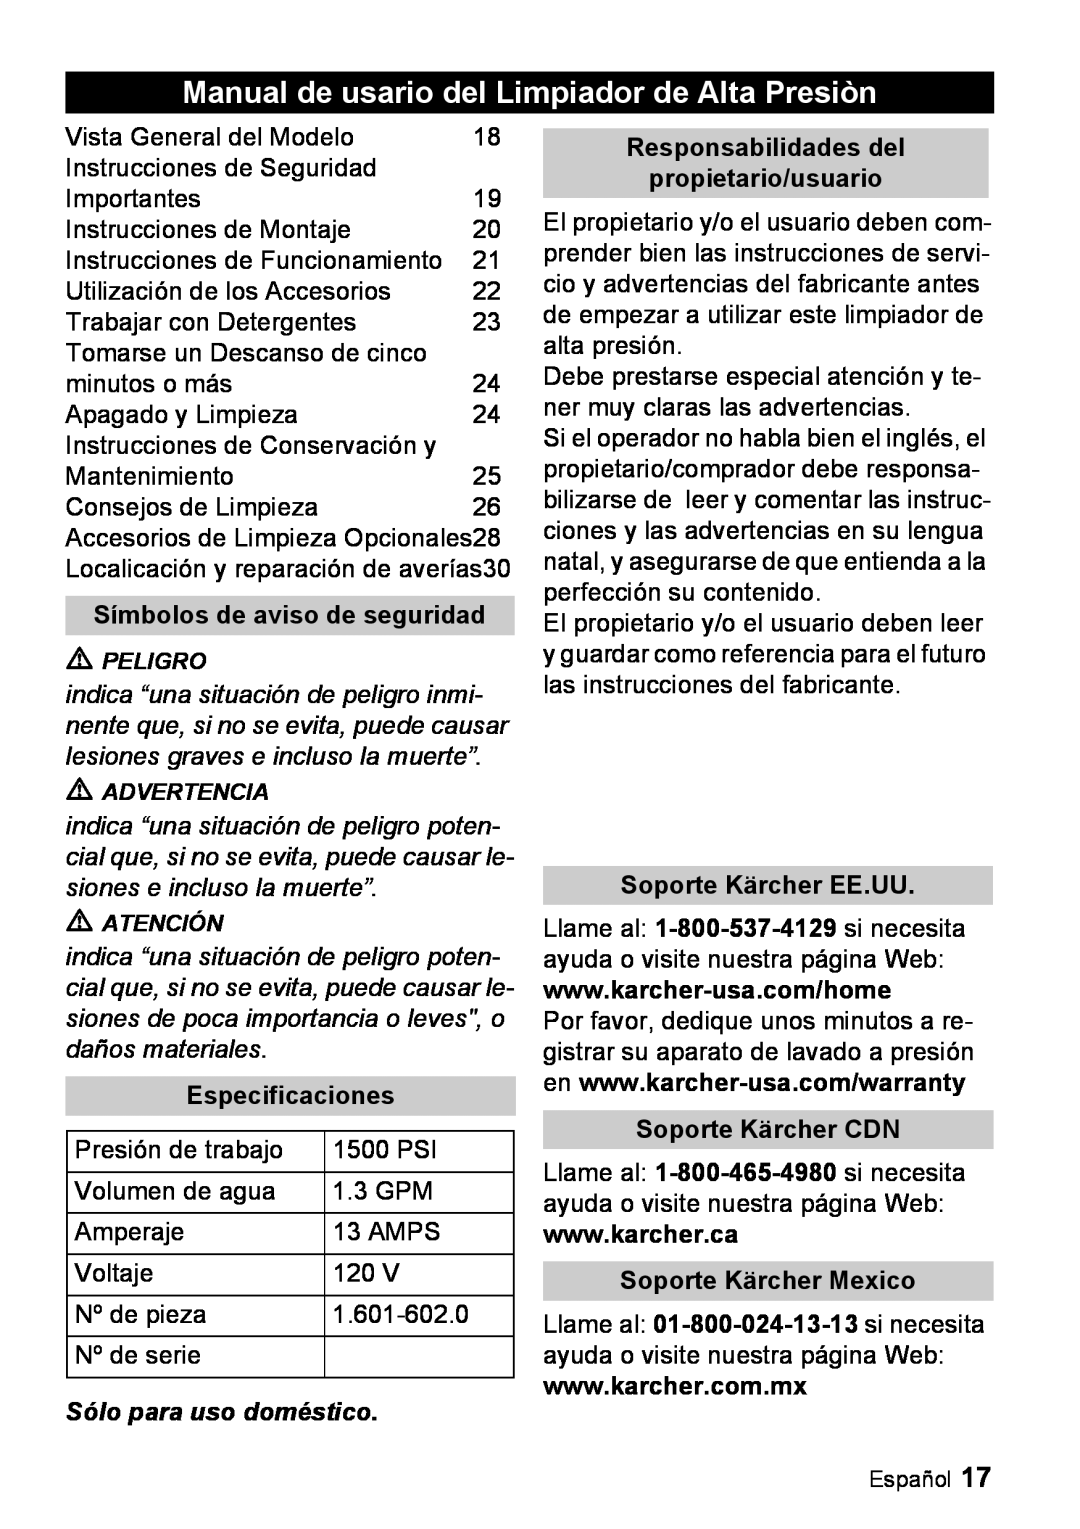 Karcher K 2.26M manual Manual de usario del Limpiador de Alta Presiòn, Símbolos de aviso de seguridad, Especificaciones 